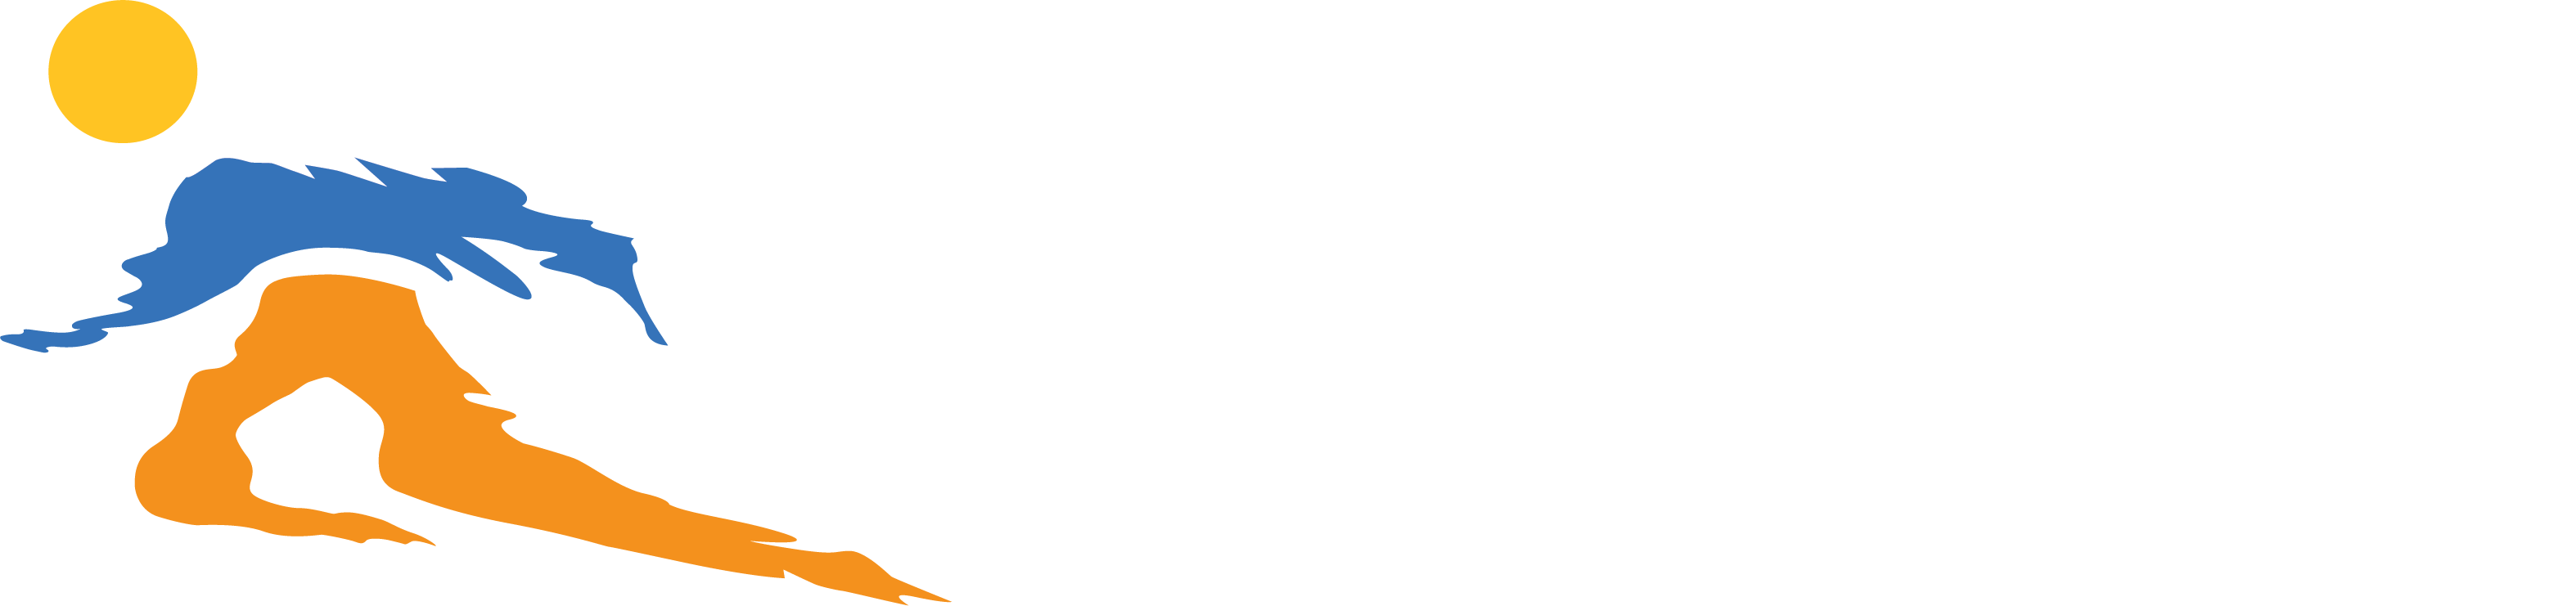 Utah Sports Commission Logo PNG